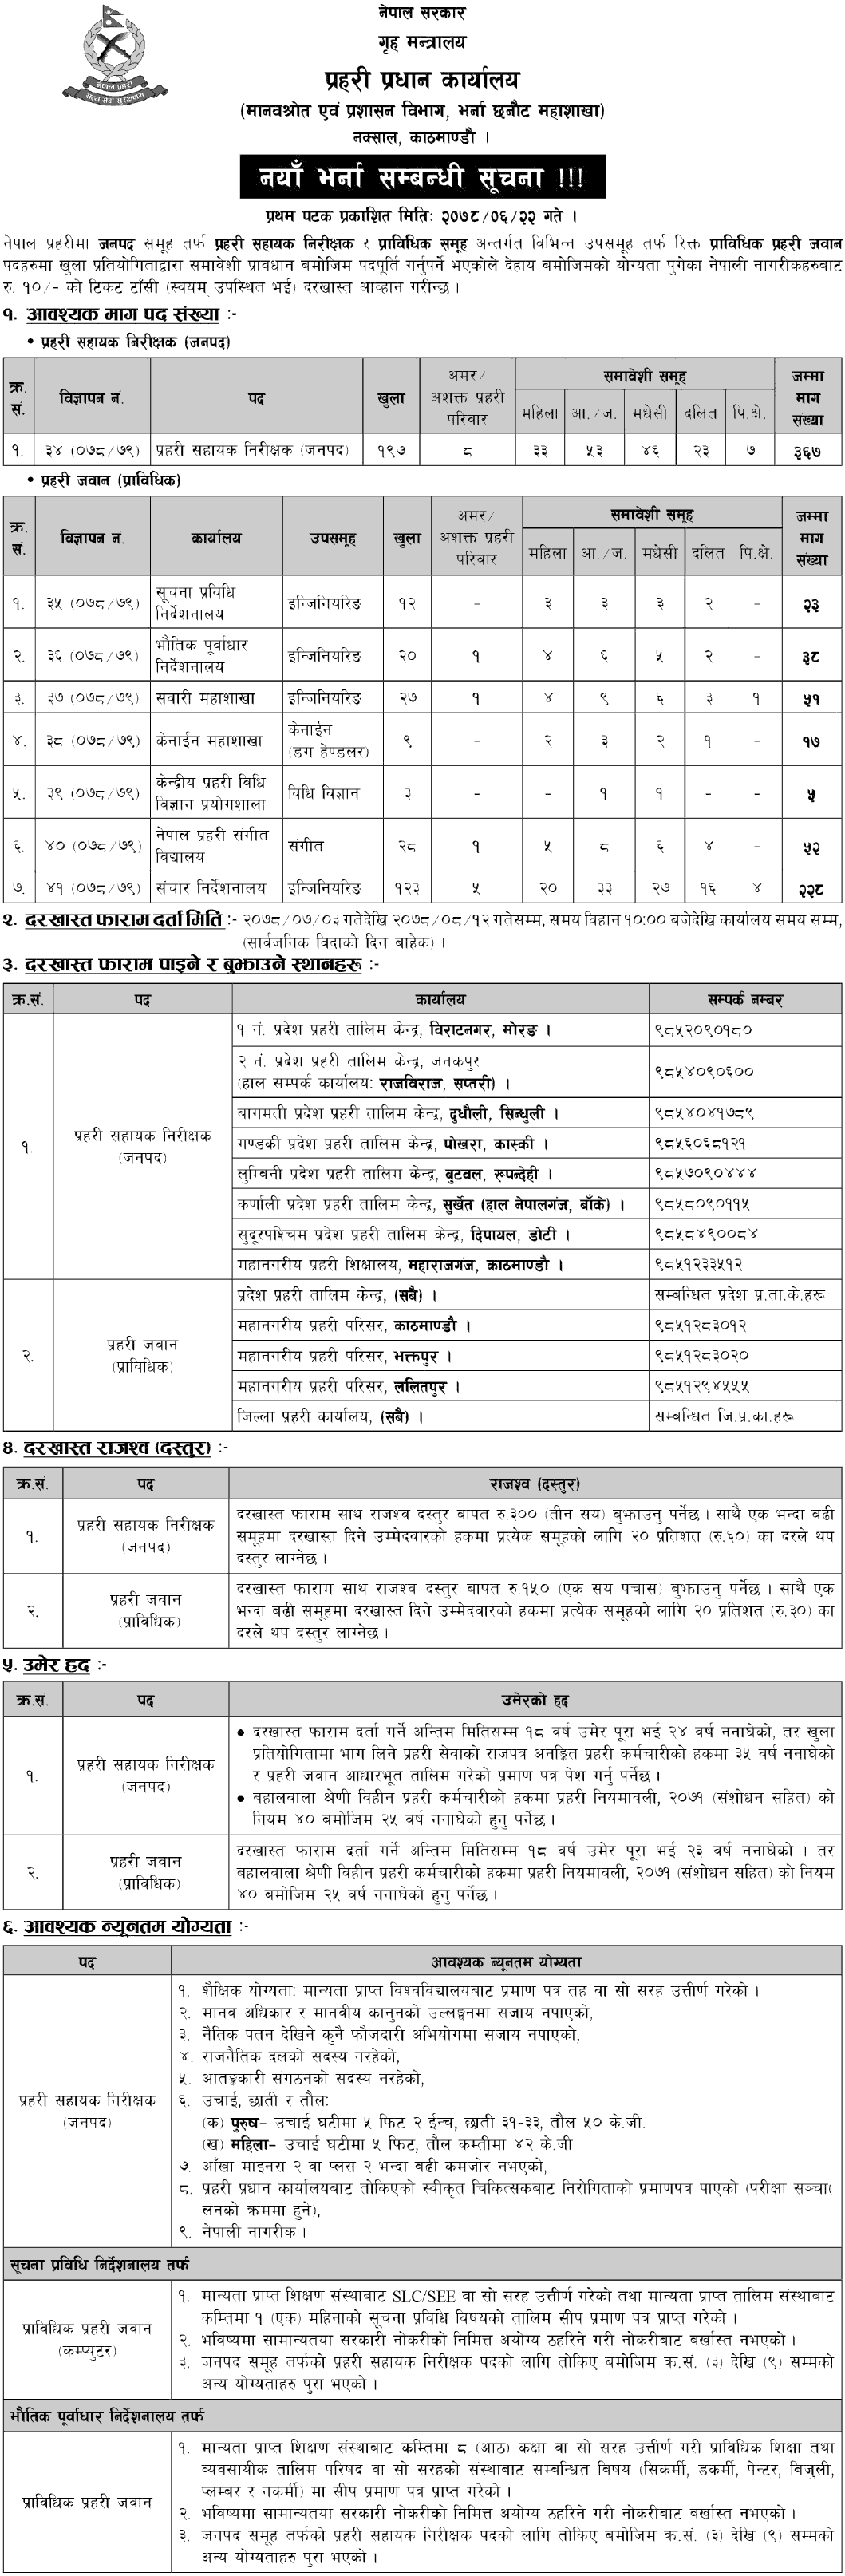 Nepal Police Vacancy for ASI and Prabidhik Prahari Jawan 2078-1